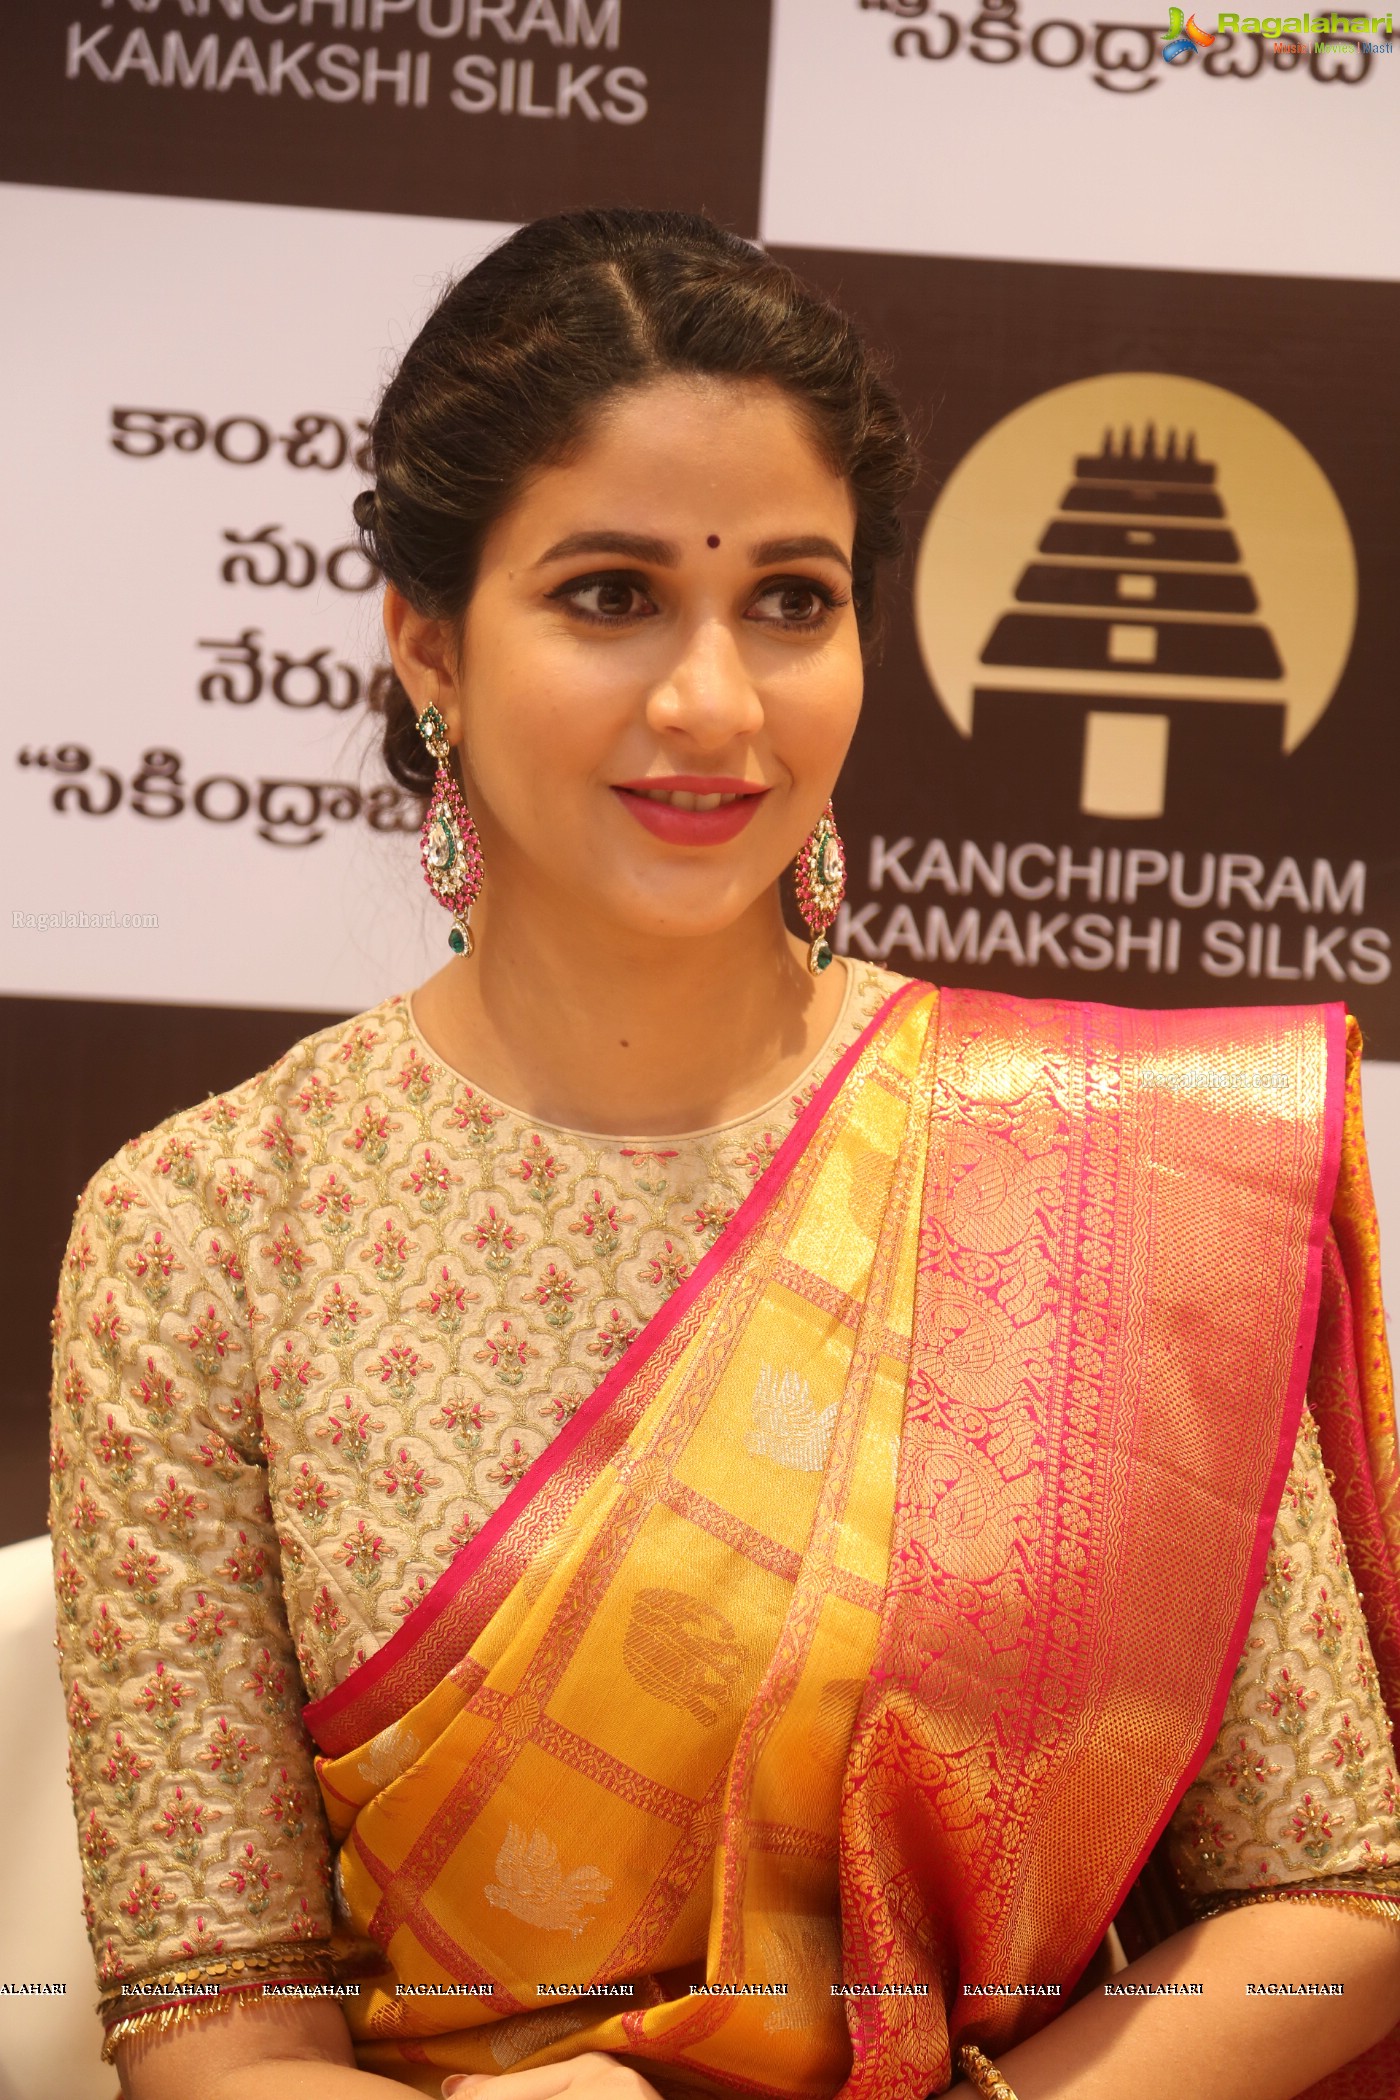 Lavanya Tripathi at Kanchipuram Kamakshi Silks (Posters)